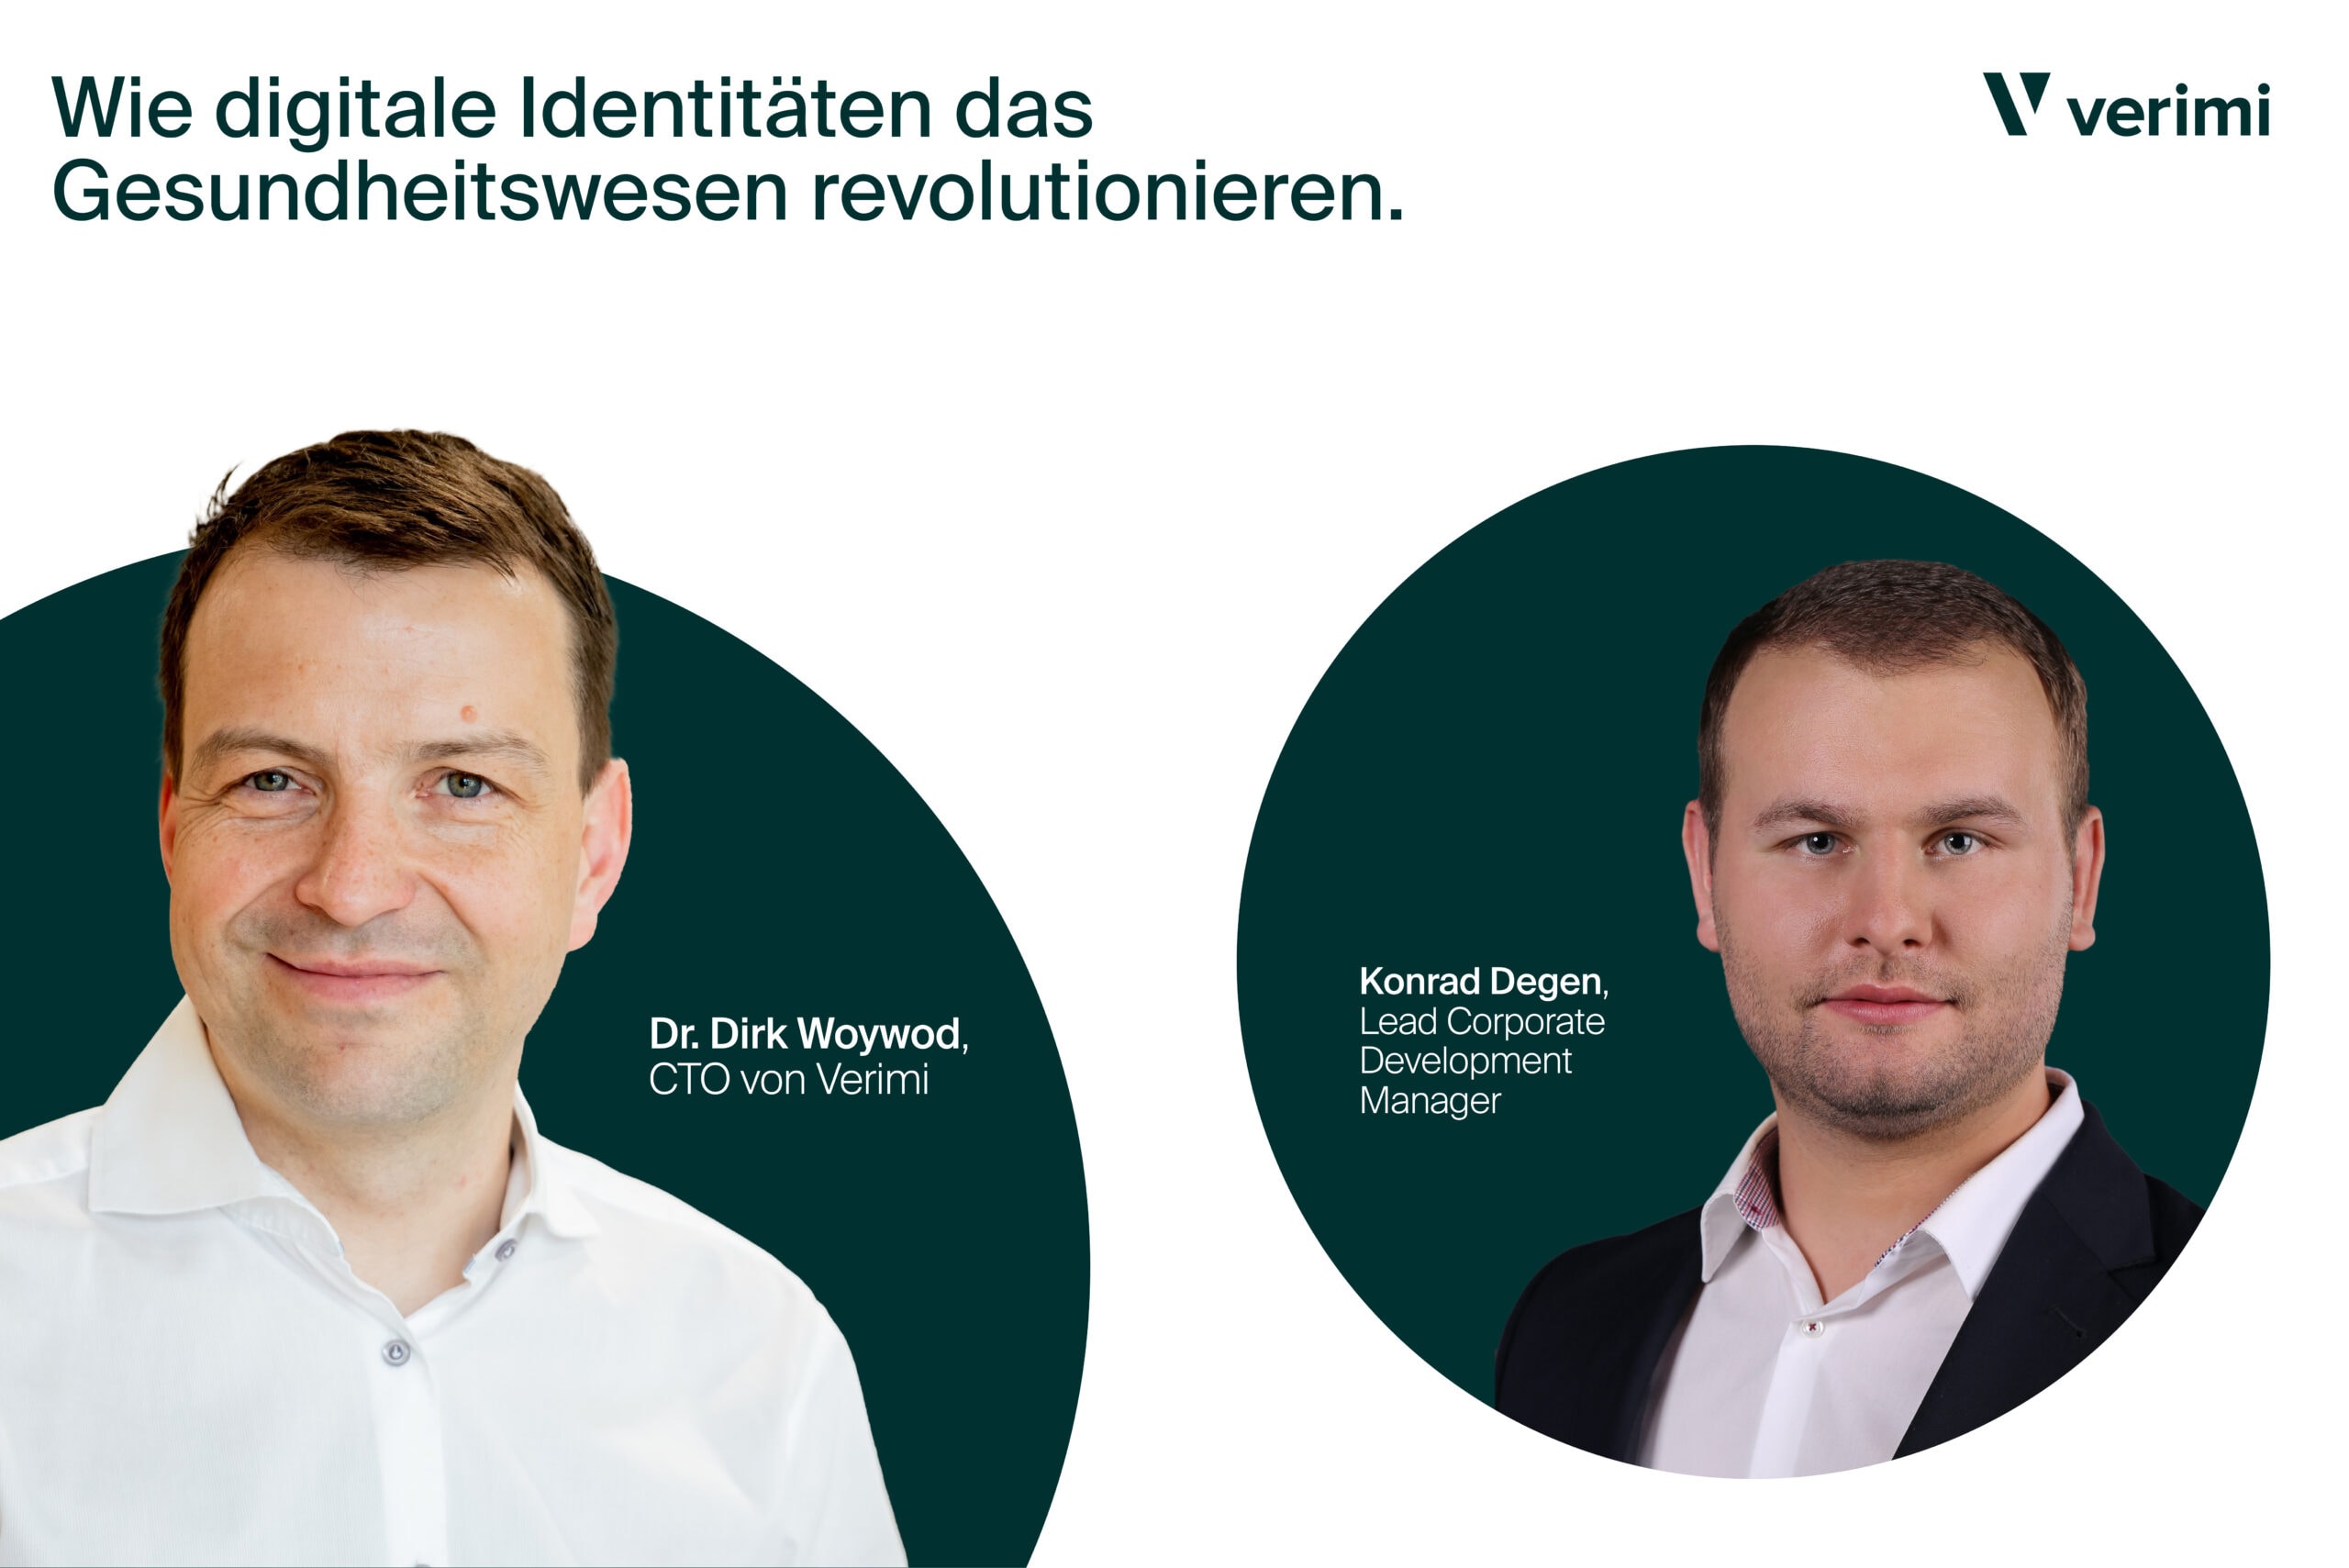 Porträts von Dr. Dirk Woywod, CTO von Verimi, und Konrad Degen, Lead Corporate Development Manager, mit dem Titel 'Wie digitale Identitäten das Gesundheitswesen revolutionieren.